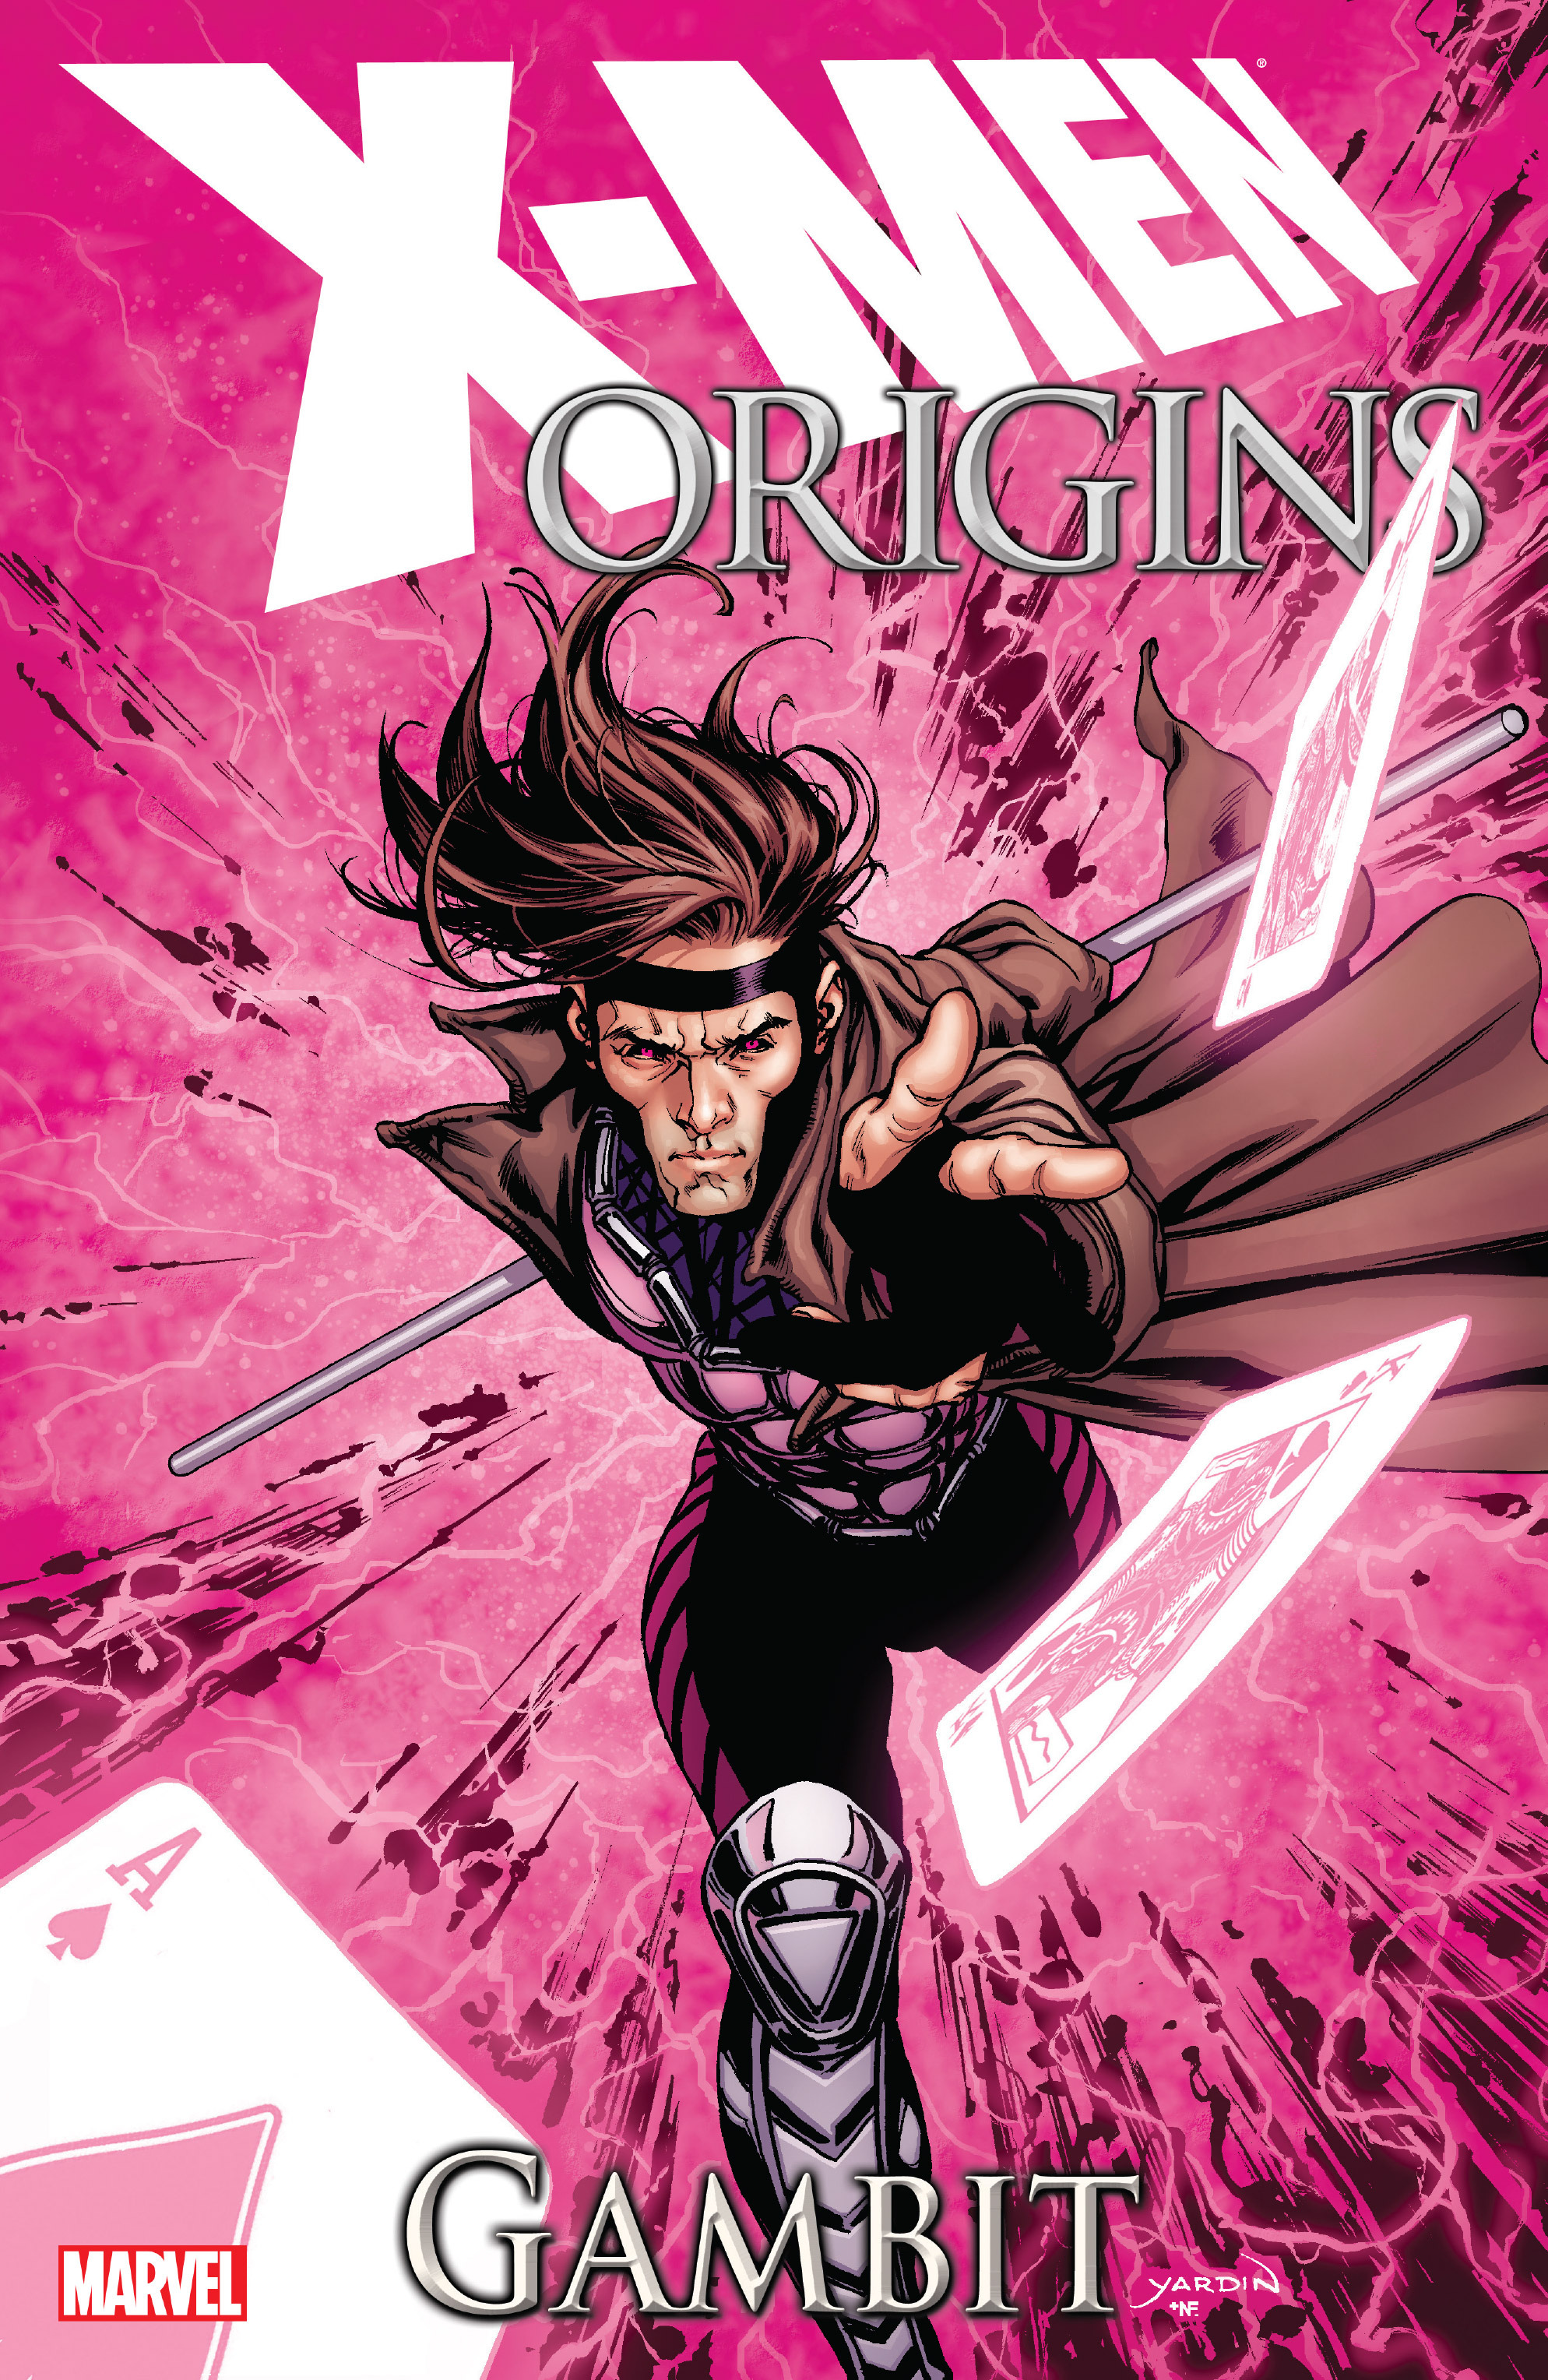 Read online X-Men Origins: Gambit comic -  Issue # TPB - 1